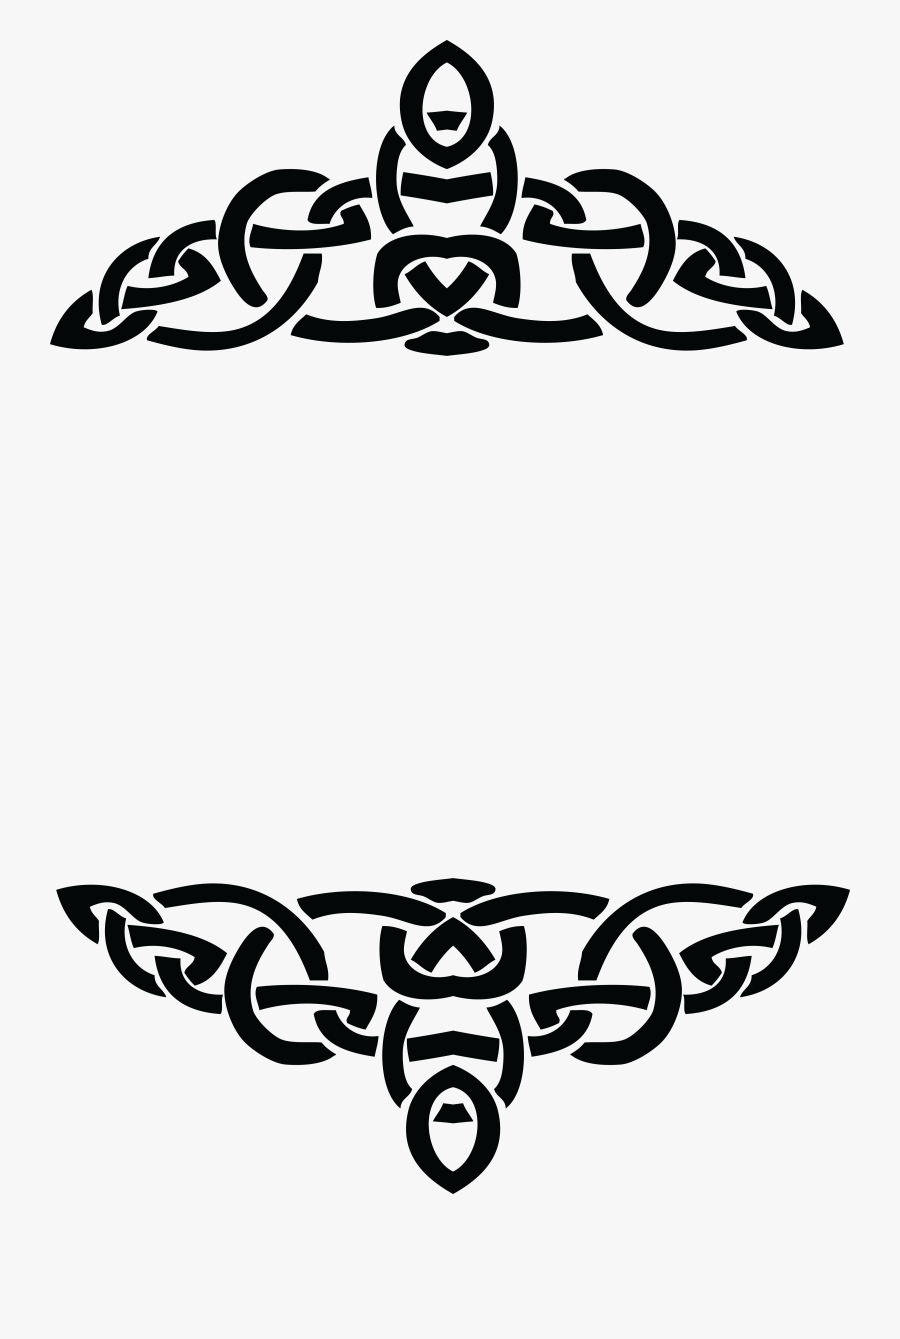 Celtic Knot Png, Transparent Clipart